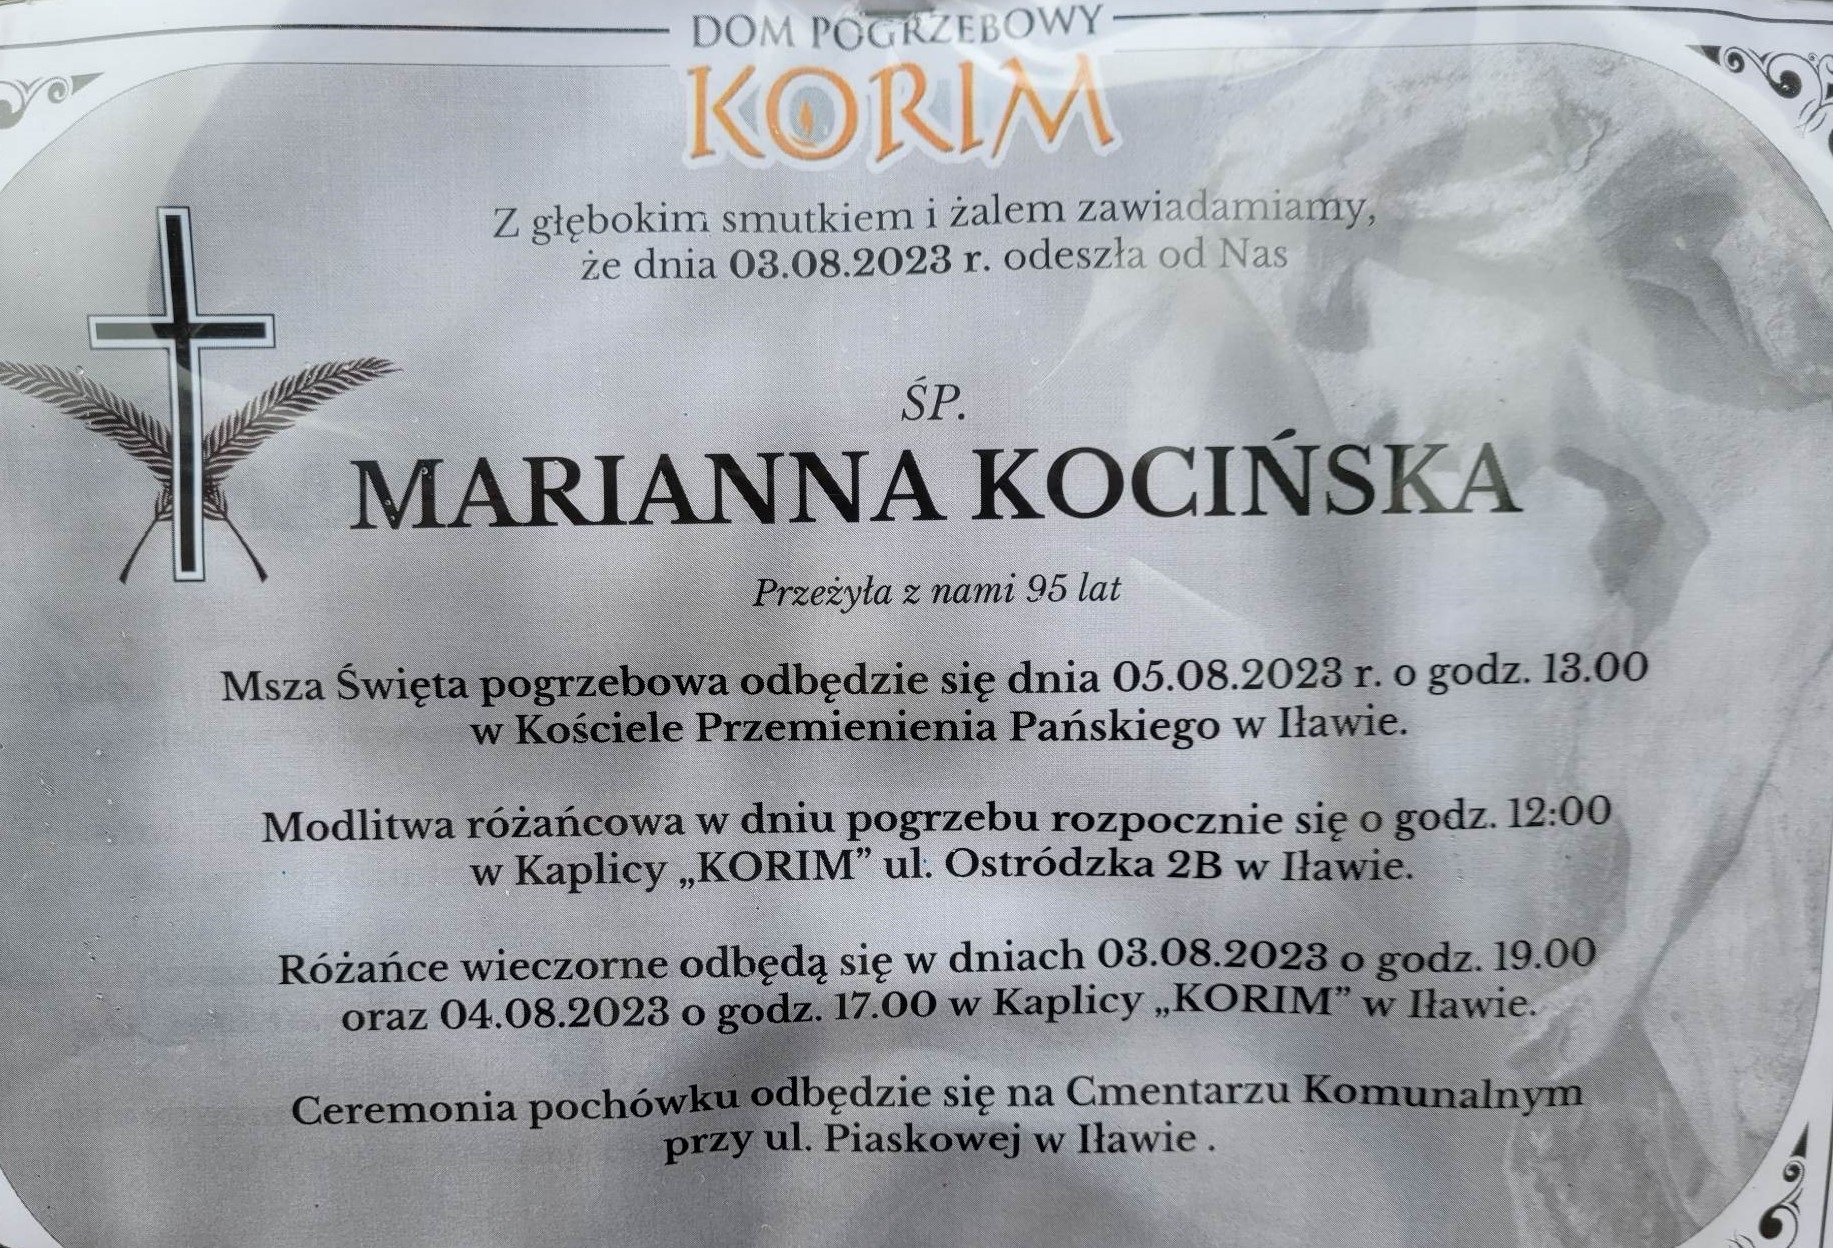 Marianna Kocińska